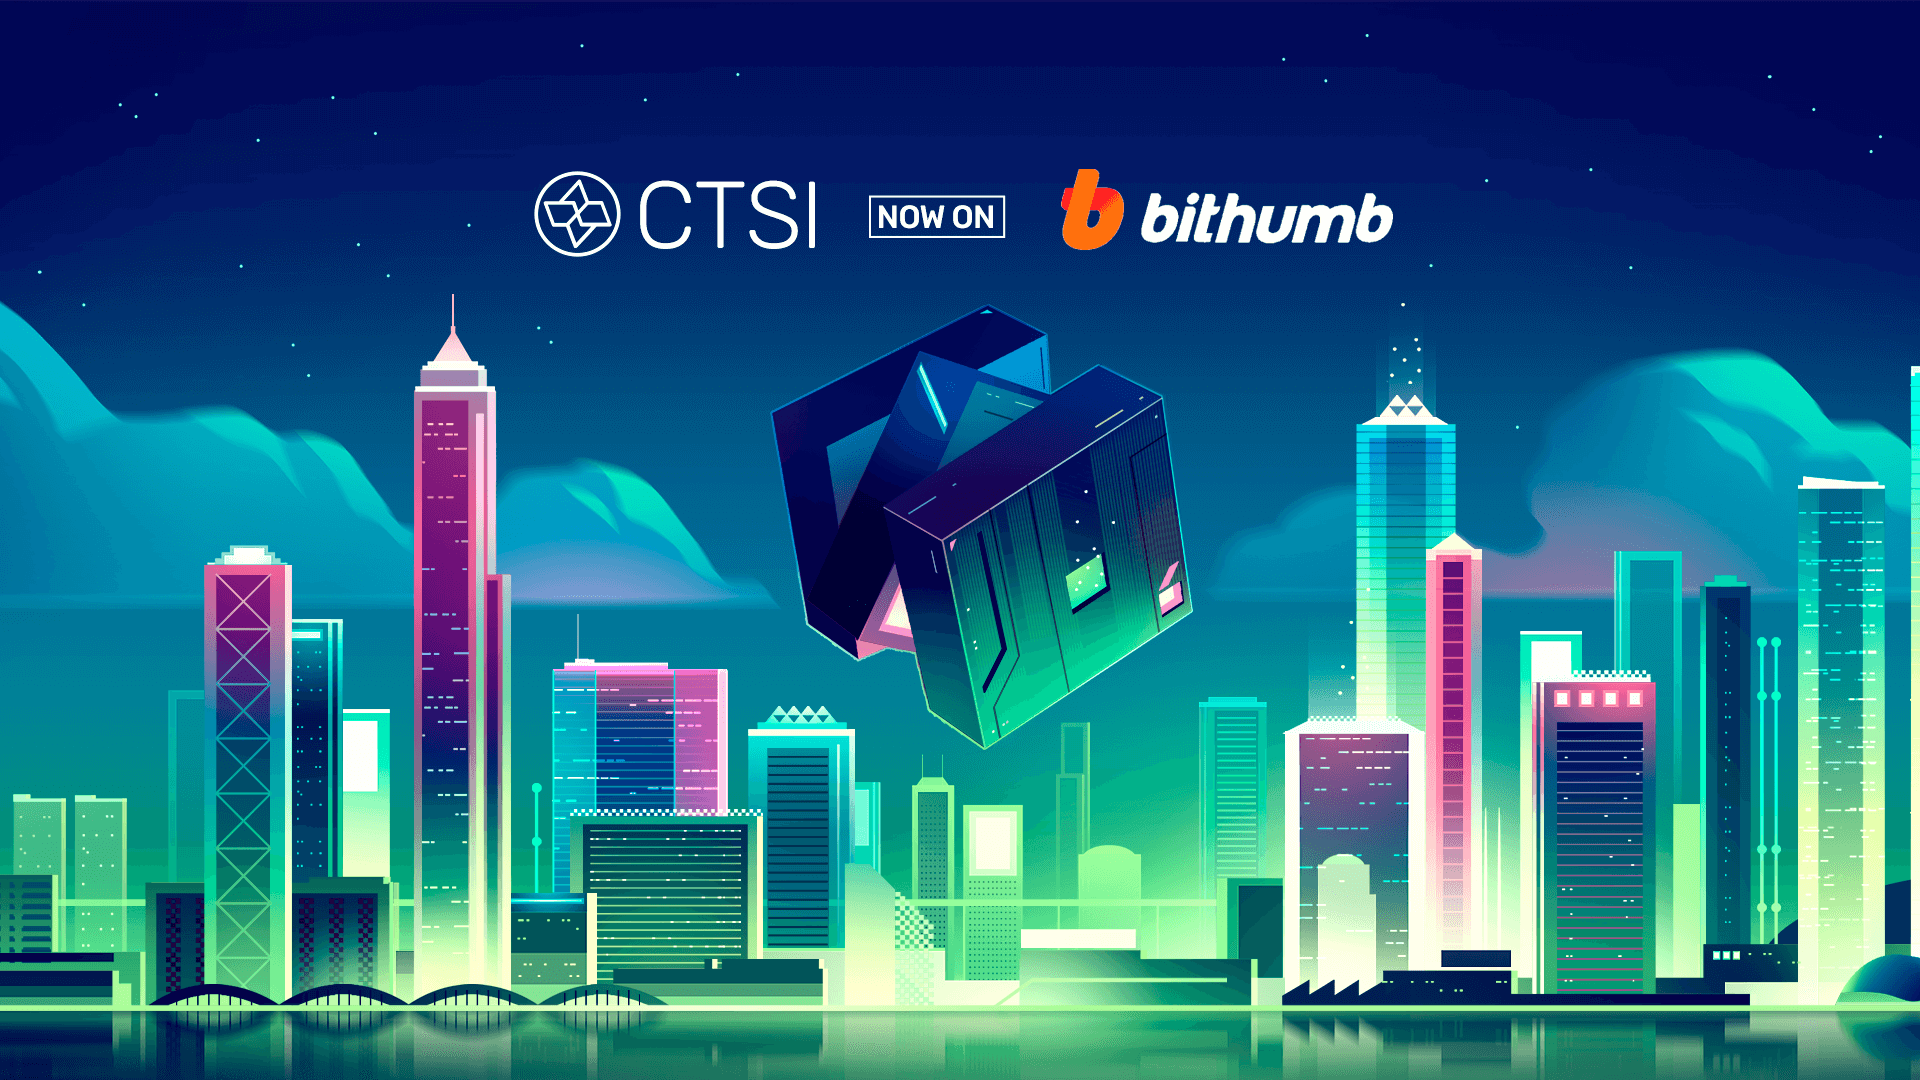 CTSI is Now Listed on Bithumb